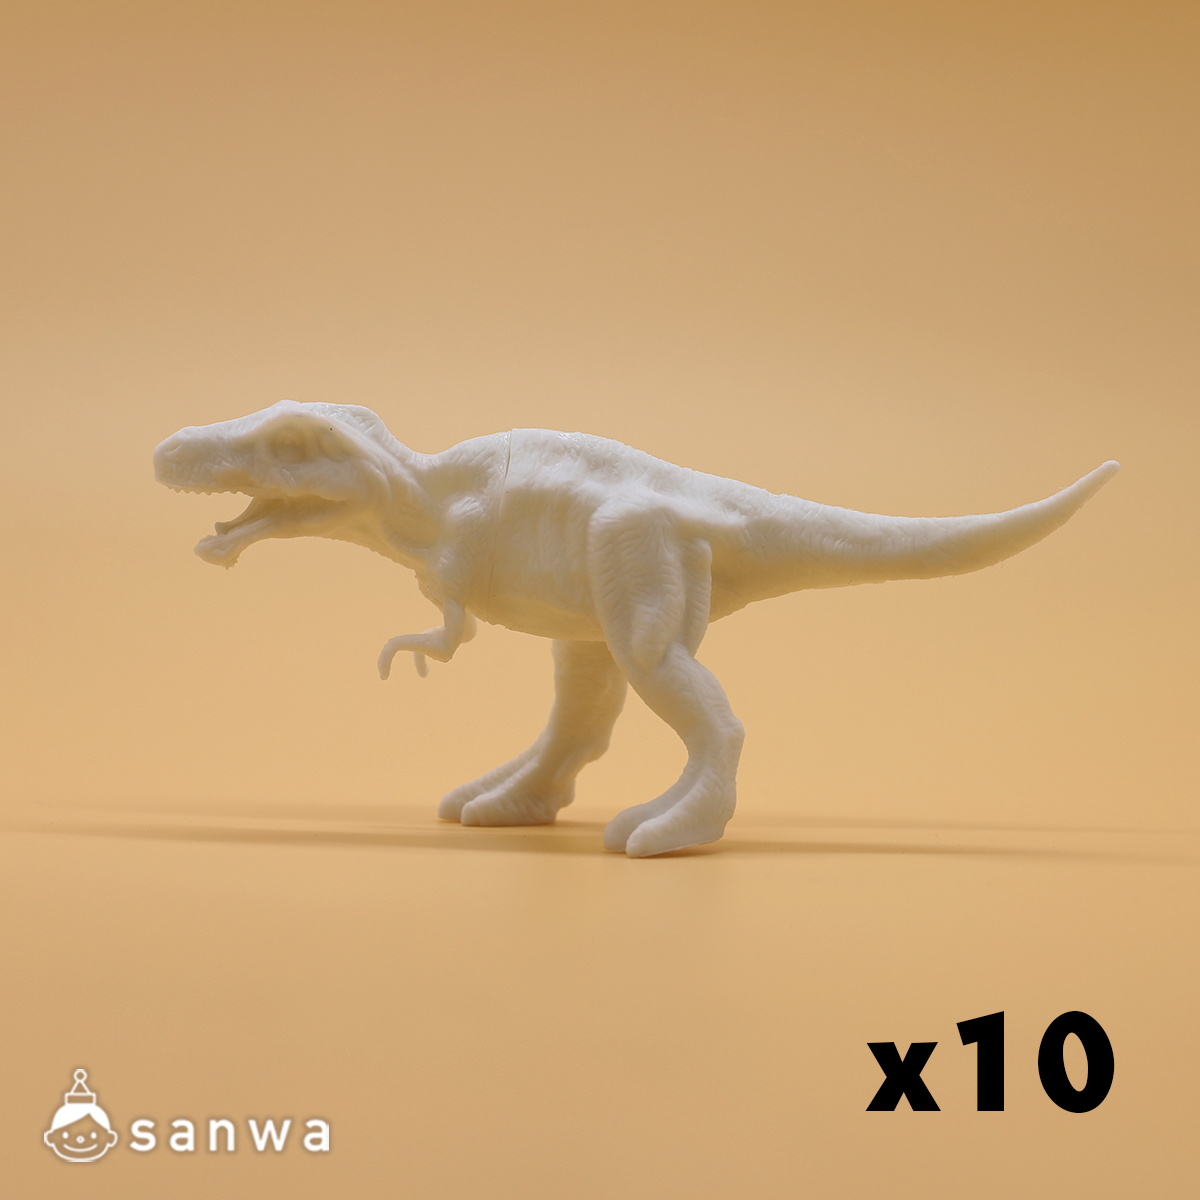 ぬるだけ!マイ恐竜A ティラノサウルス 10個ｾｯﾄ サムネイル